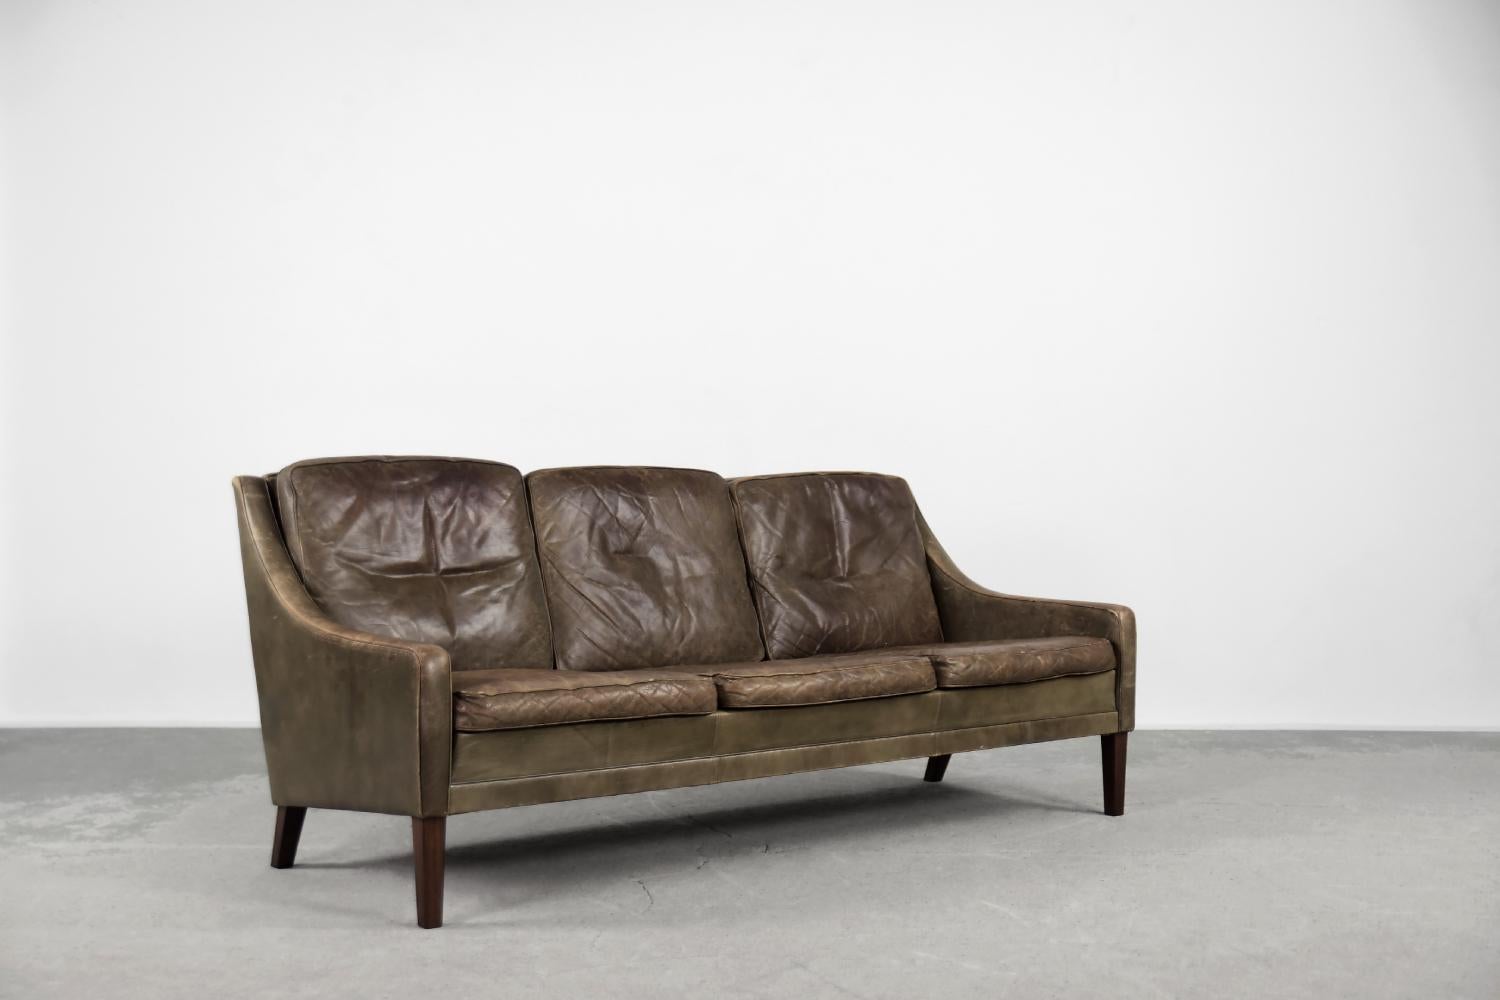 Ce canapé vintage trois places de style Mid-Century Modern a été fabriqué au Danemark dans les années 1950. Le canapé est recouvert de cuir naturel de couleur brune et terreuse. Le cuir a une belle patine d'origine. Il comporte trois coussins